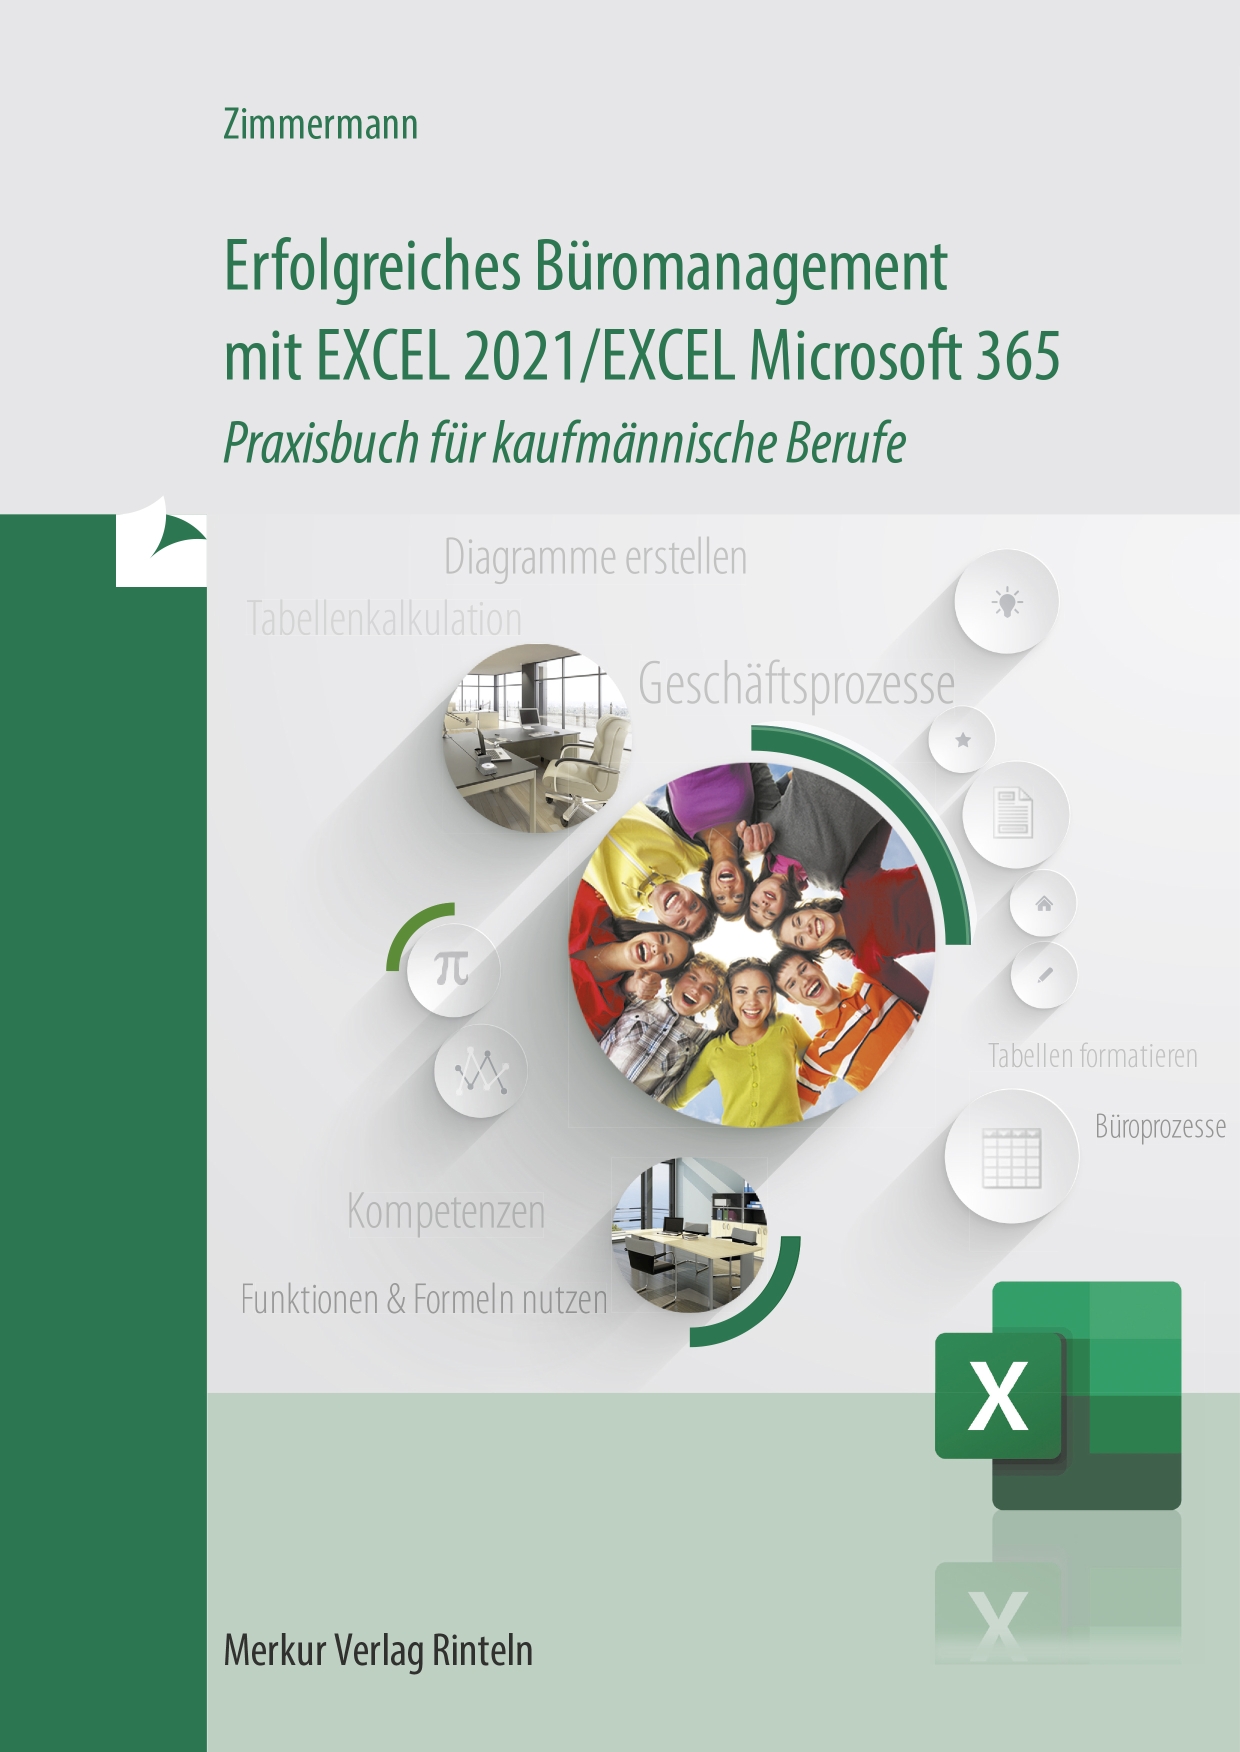 Erfolgreiches Büromanagement EXCEL 2021 / Excel Microsoft 365 Praxisbuch für kaufmännische Berufe